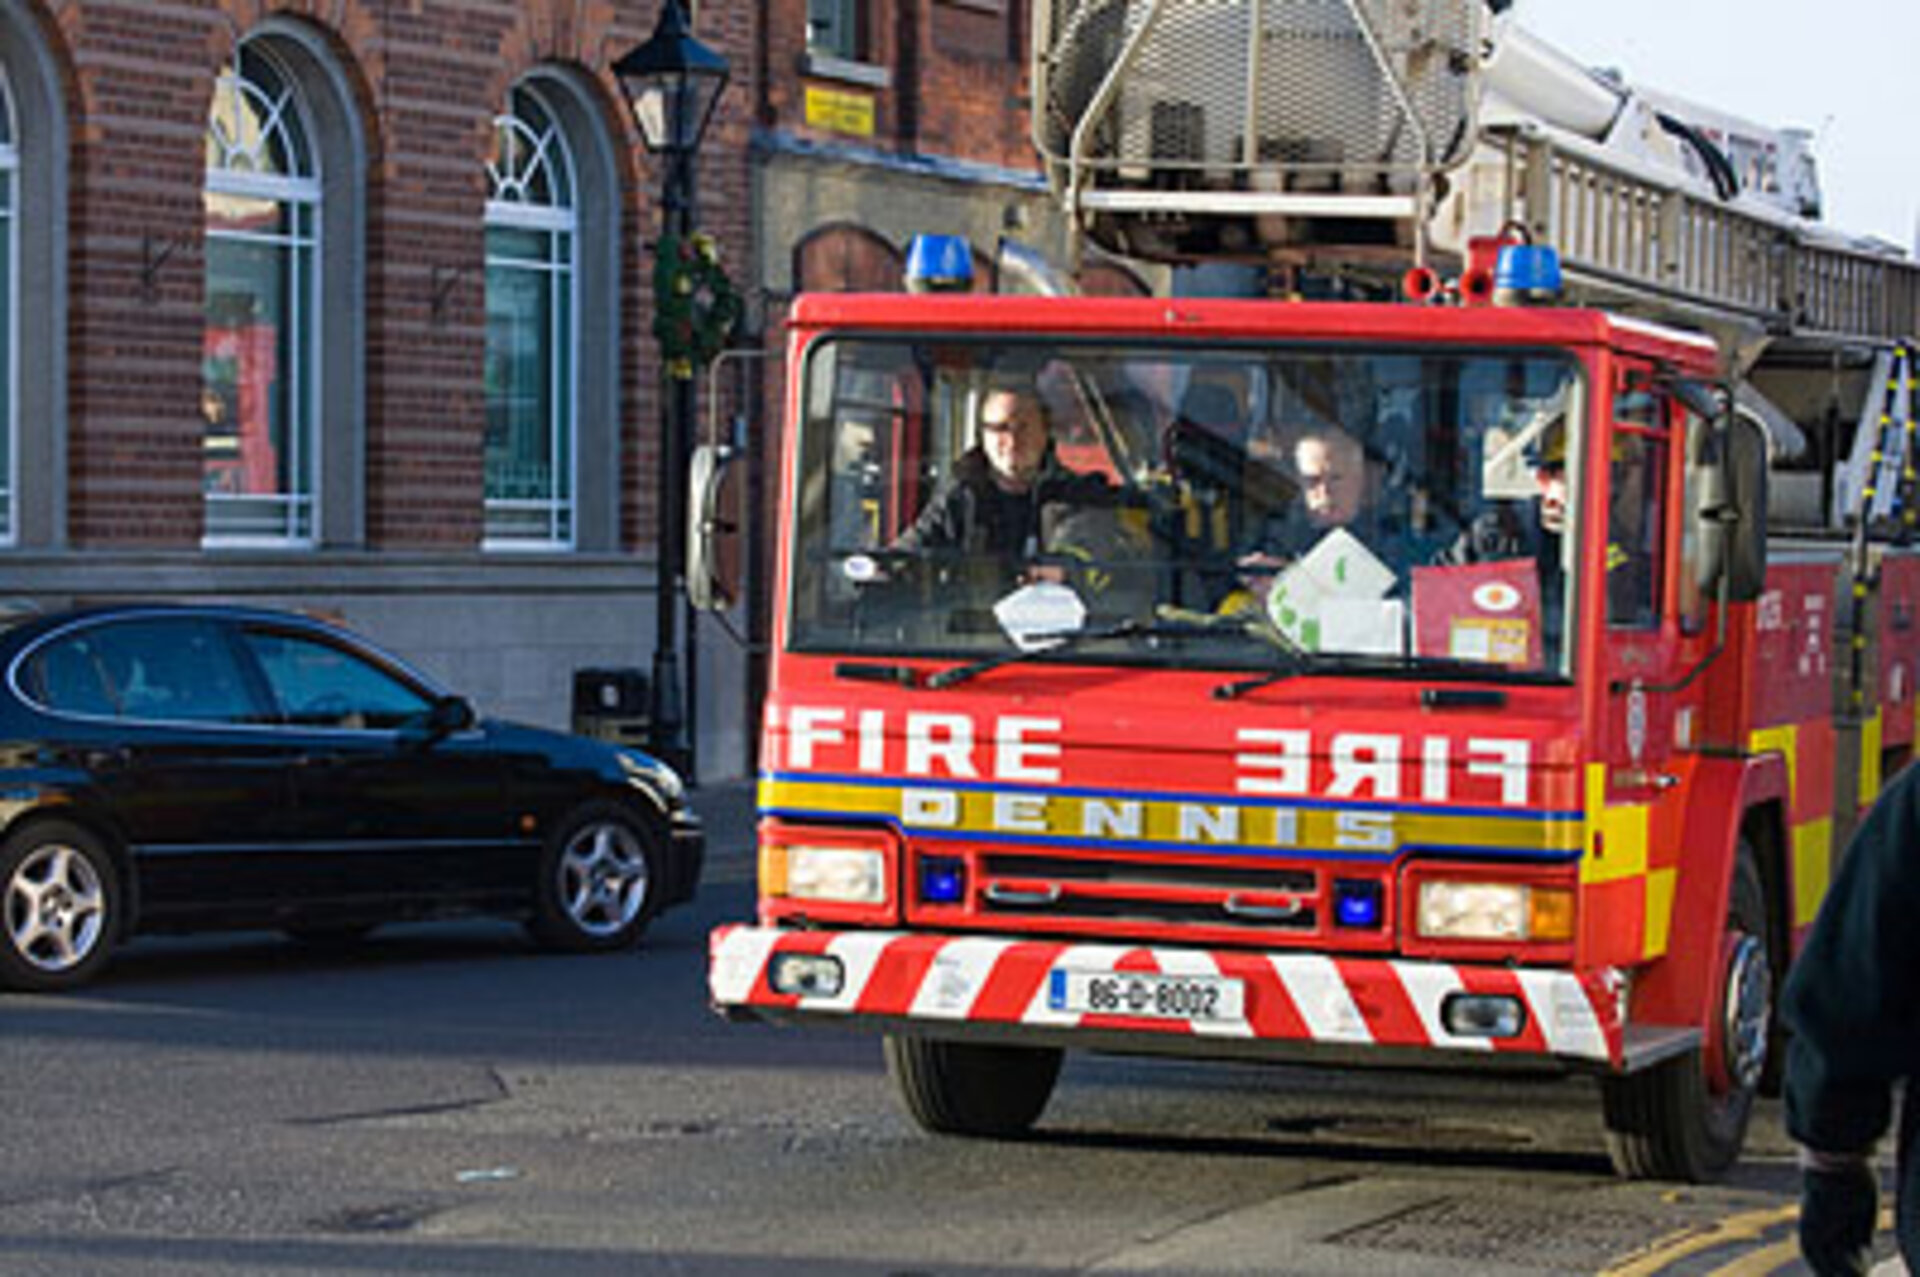 Dublin fire engine